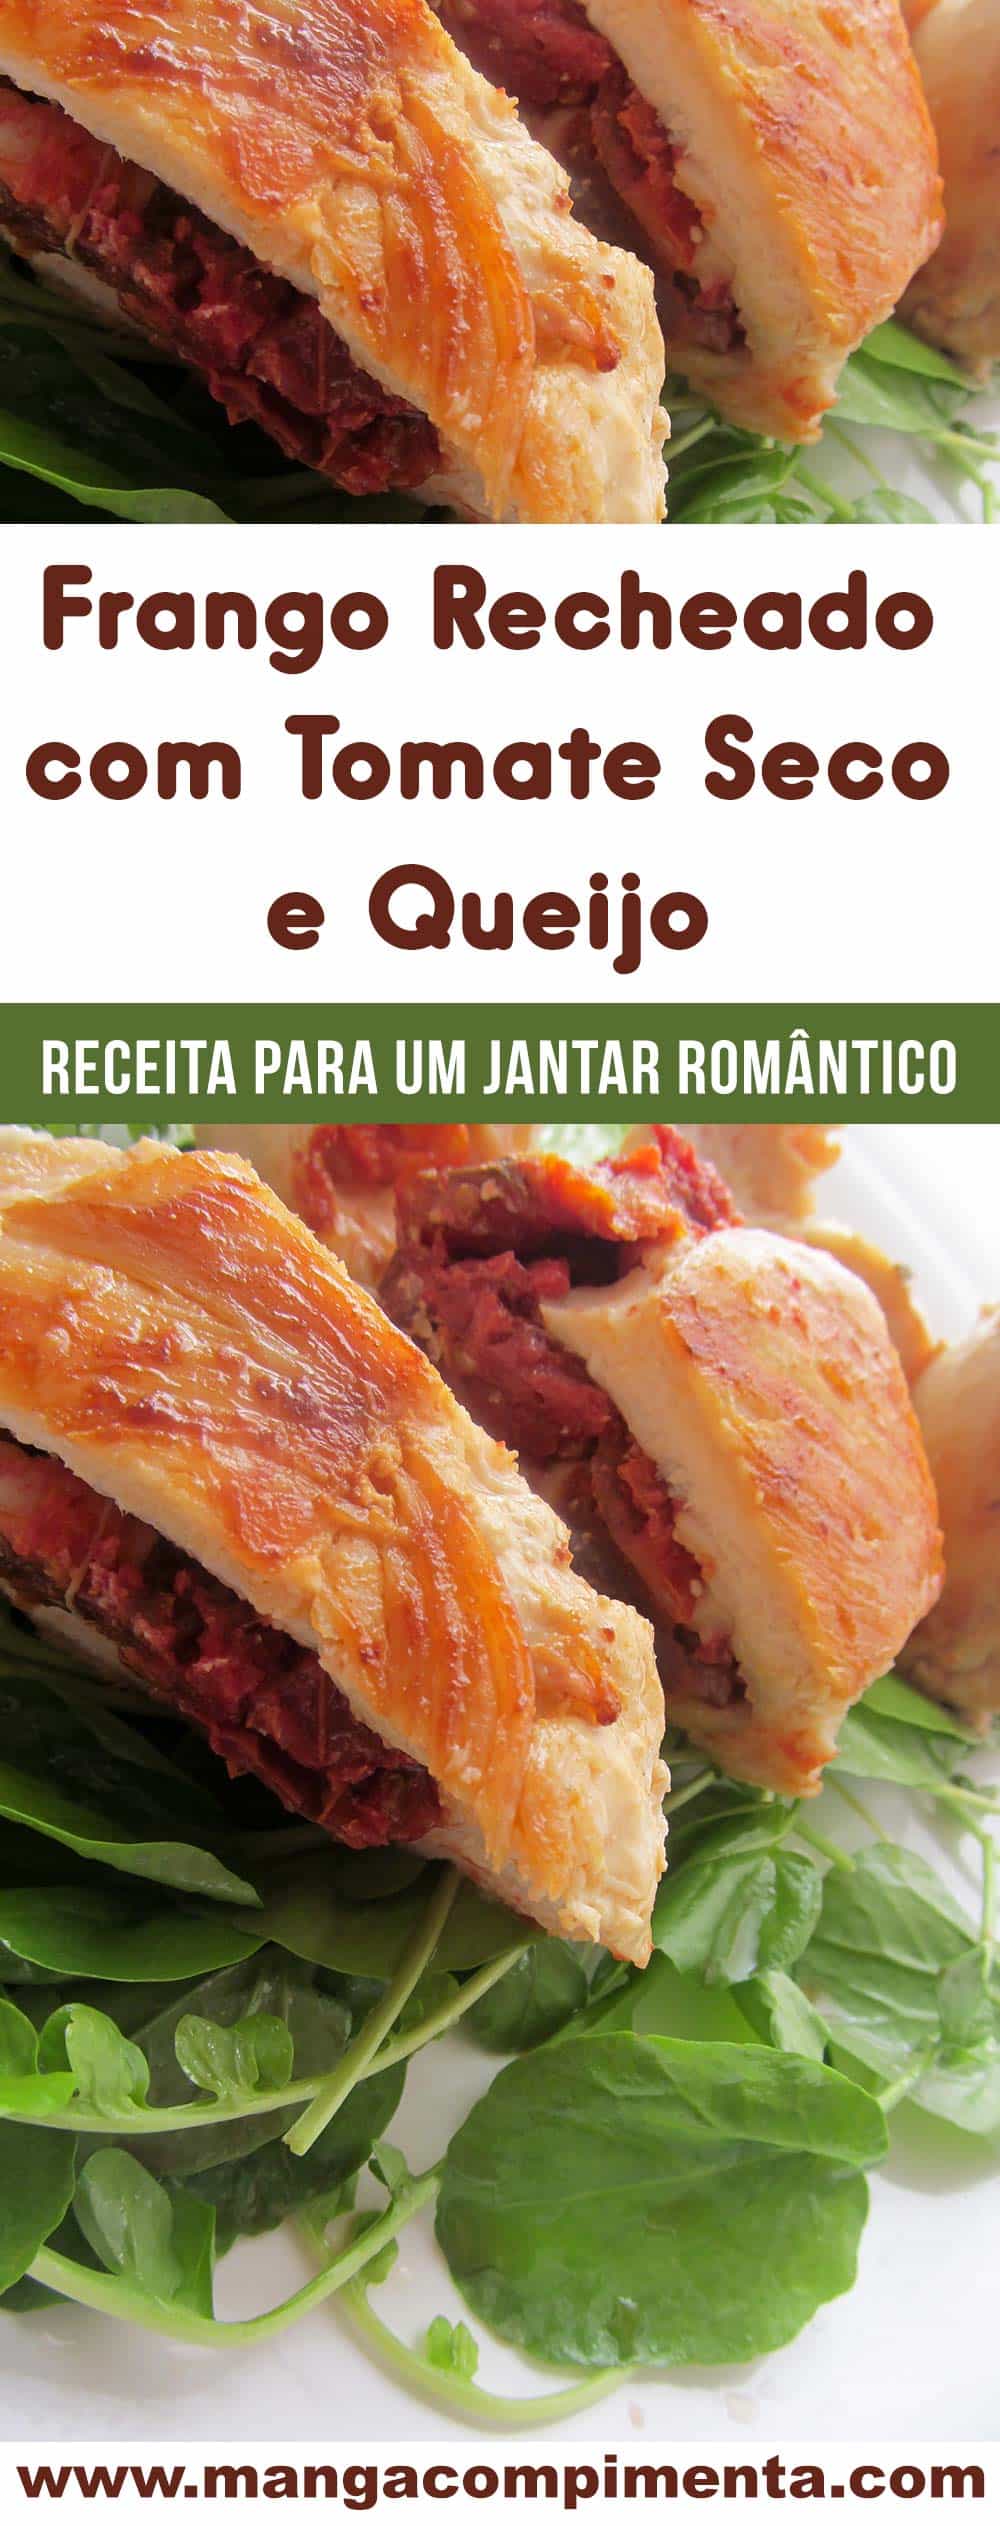 Frango Recheado com Tomate Seco e Queijo - veja um delicioso prato para um jantar romântico!